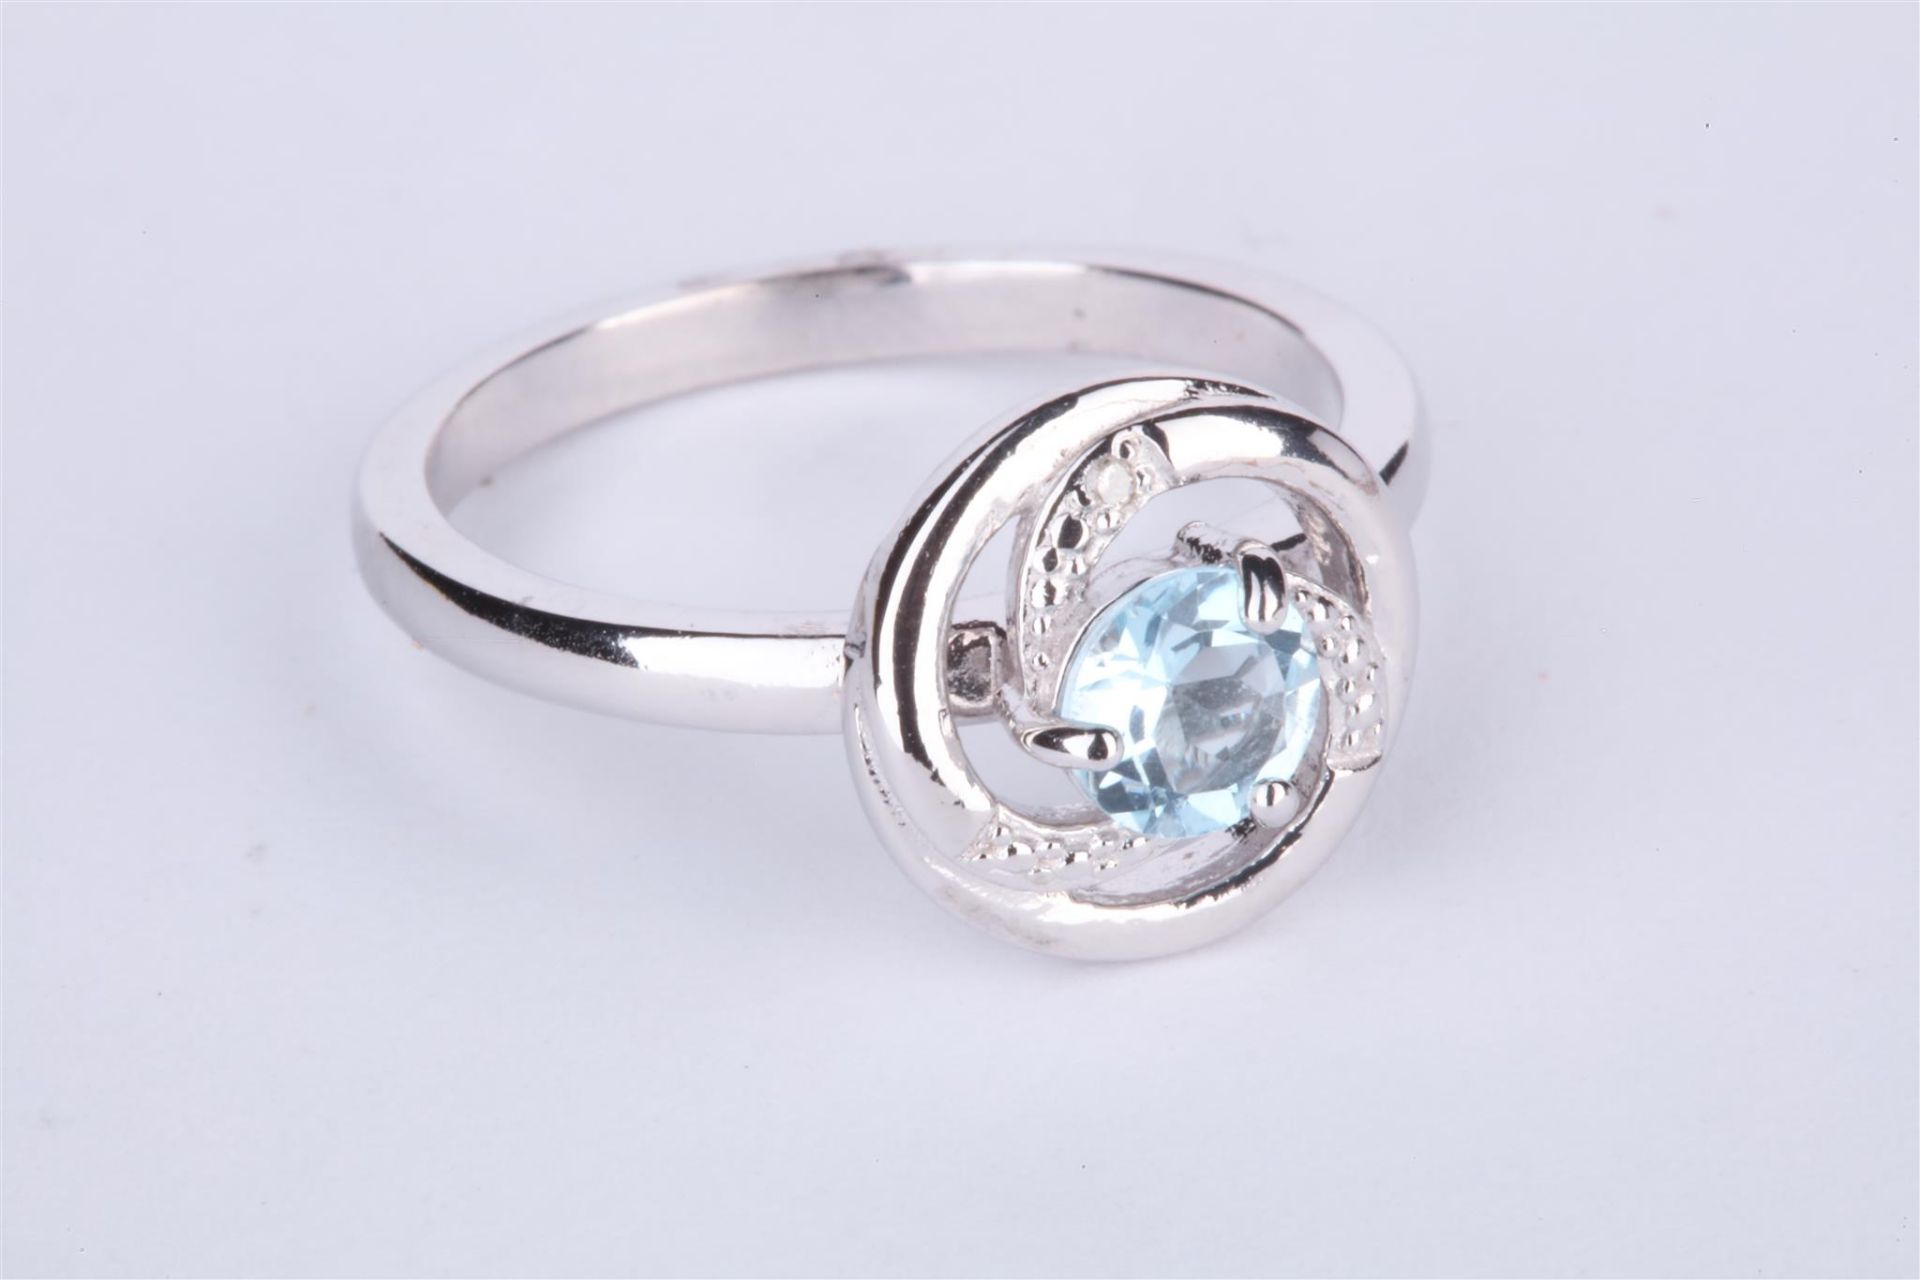 + VAT Ladies Silver Aquamarine and Diamond Circular Ring - Central Aquamarine With Swirl Design